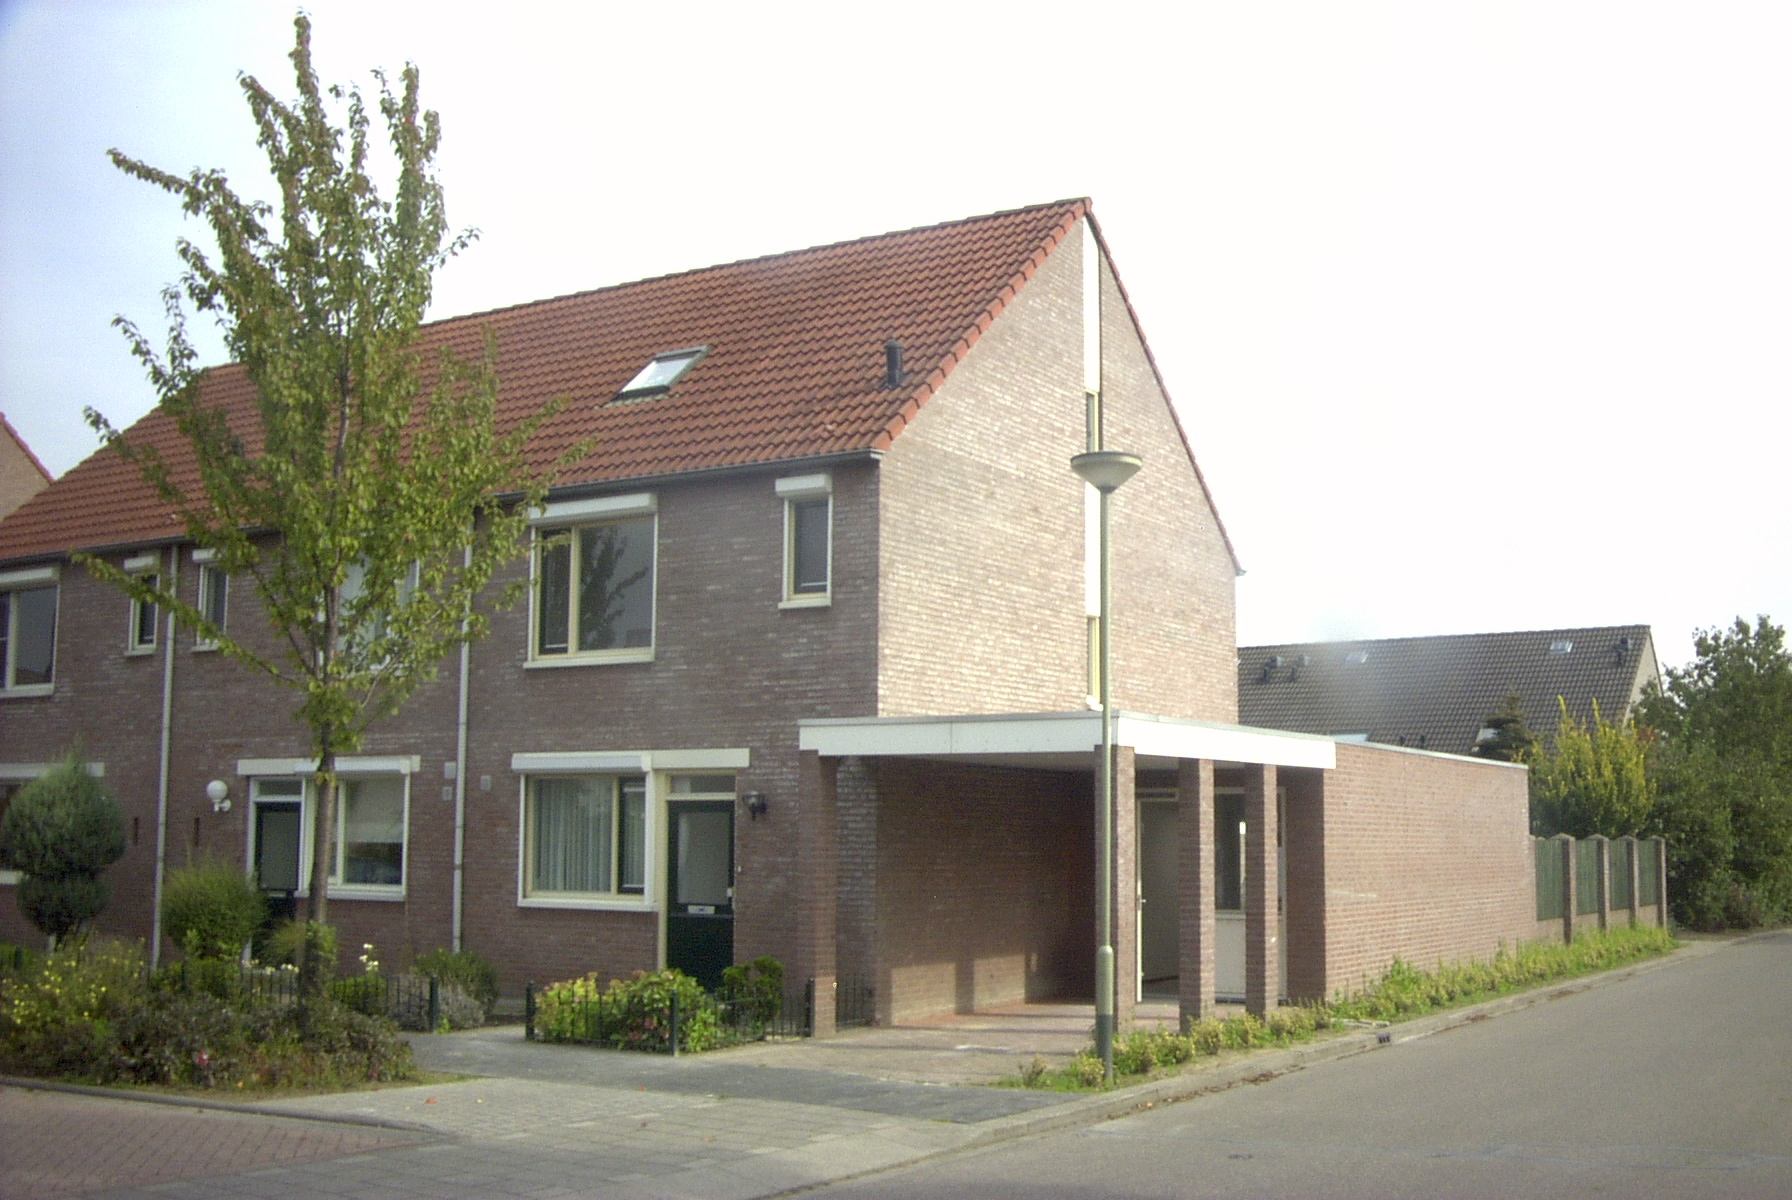 Koetsiersweg 6, 5988 CN Helden, Nederland